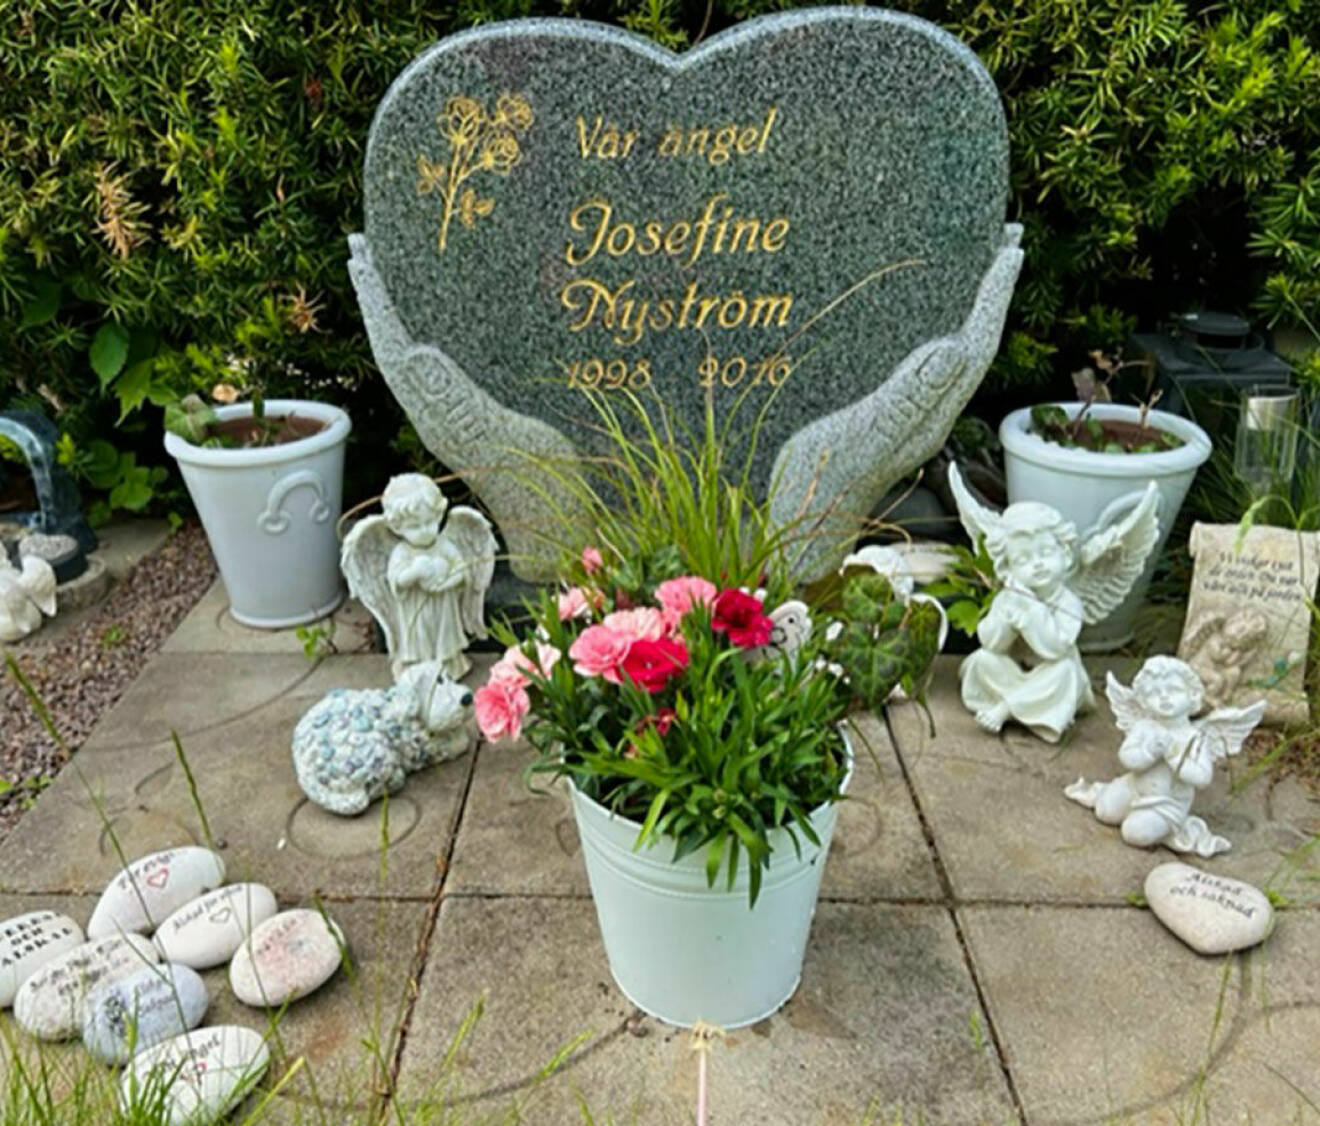 Josefine Nyströms gravsten i Vadstena. Stenen är formad som två händer som håller i ett hjärta med Josefines namn och födelsedatum. Runt gravstenen finns änglar och blommor.